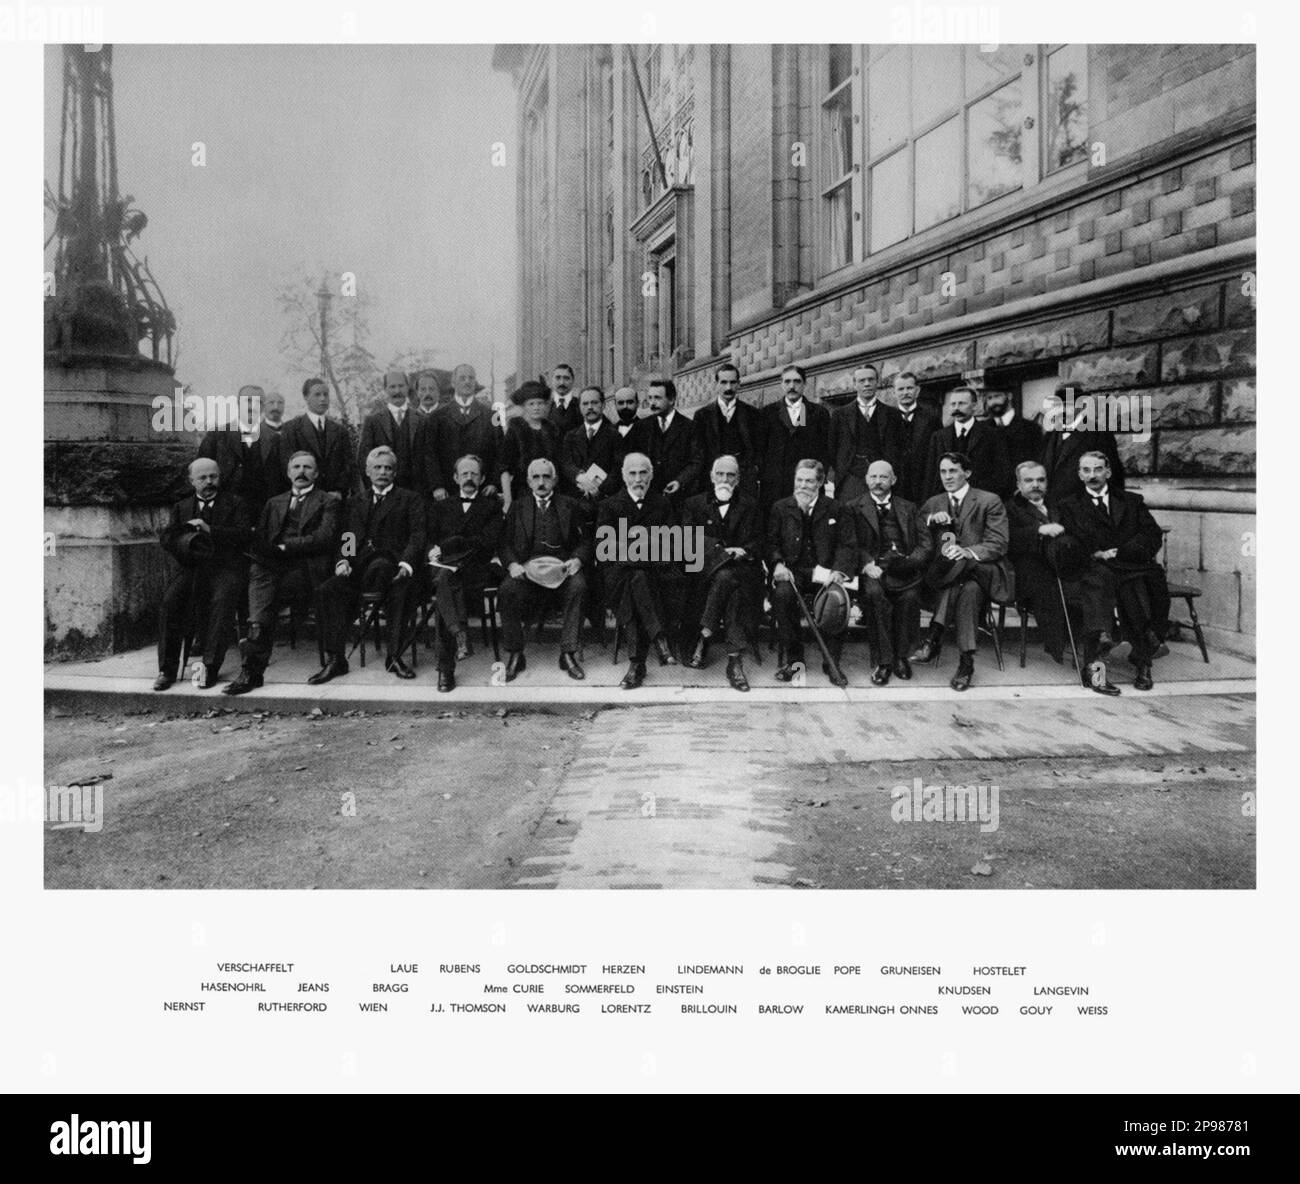 1913 , Brüssel , Belgien : der deutsche Physiker ALBERT EINSTEIN ( 1879 - 1955 ) , Nobelpreisträger 1921 , anlässlich der zweiten Solvay-Konferenz über Physik in Brüssel . Auf diesem Foto mit Madame MARIE CURIE , DE BROGLIE , VERSCHAFFELT , HASENOHRL , NERNST , RUTHEFORD , LAUE , BRAGG , WIEN , RUBENS , J.J. THOMSON , WARBURG , GOLDSCHMIDT , HERZEN , SOMMERFELD , LORENTZ , LINDEMANN , BRILLOUIN , BARLOW , POPE , KAMERLINGH ONNES , GRUNEISEN , KNUDSEN , HOSTELET , WOOD , GOUY , LANGEVIN und WEISS - foto Storiche - foto storica - scienziato - Wissenschaftler - Portrait - Rituto - Physik - FISICA - Stockfoto